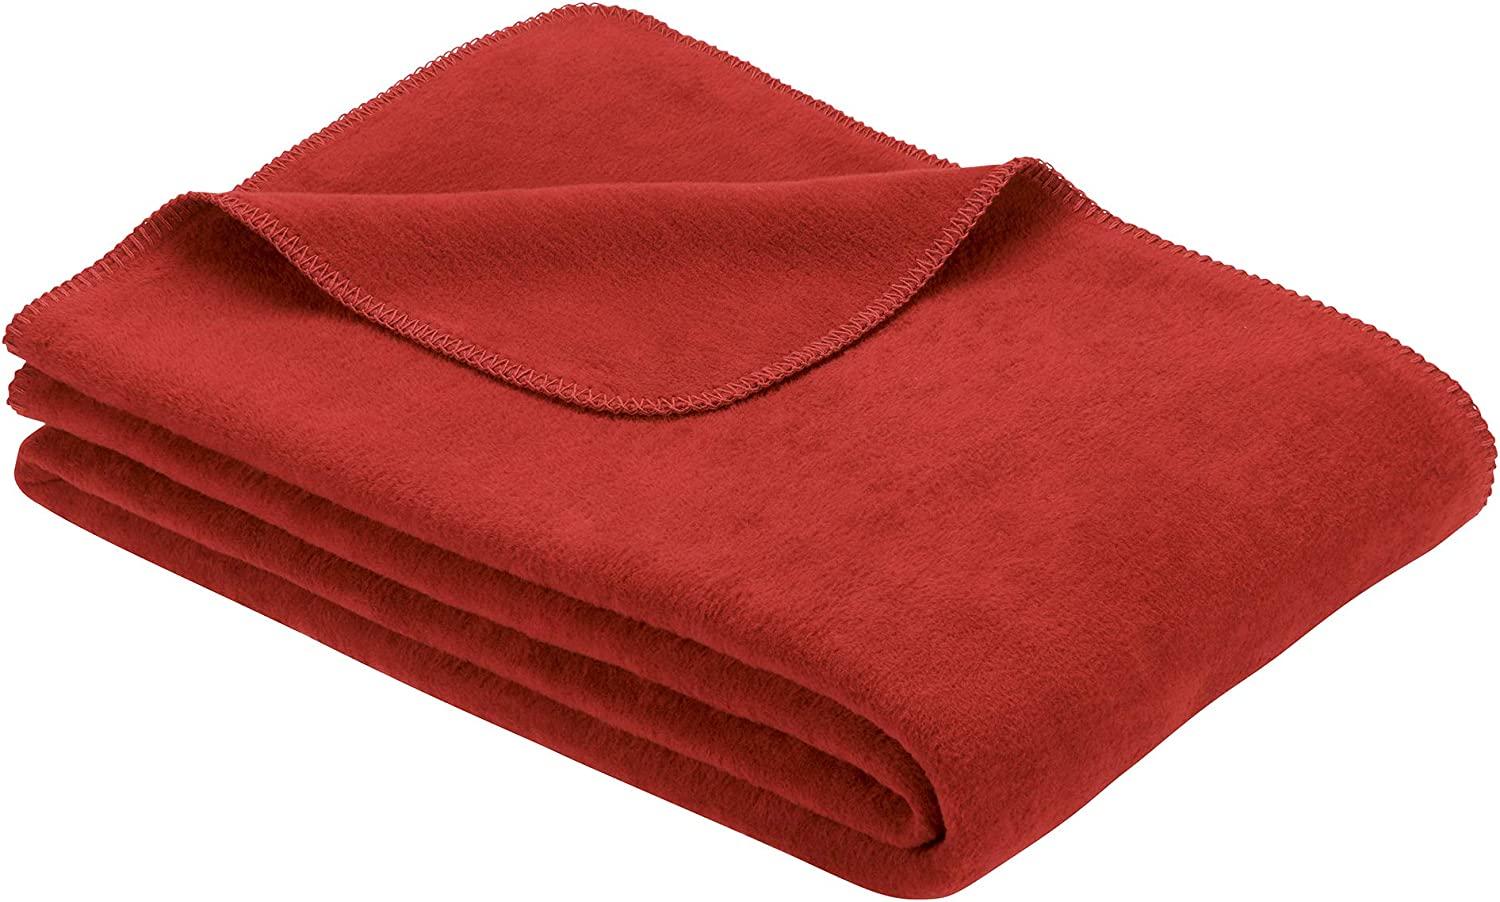 Ibena Bergamo Baumwolldecke 150x200 cm - Kuscheldecke rot einfarbig aus Biobaumwolle, hochwertige Markenqualität Made in Germany Bild 1